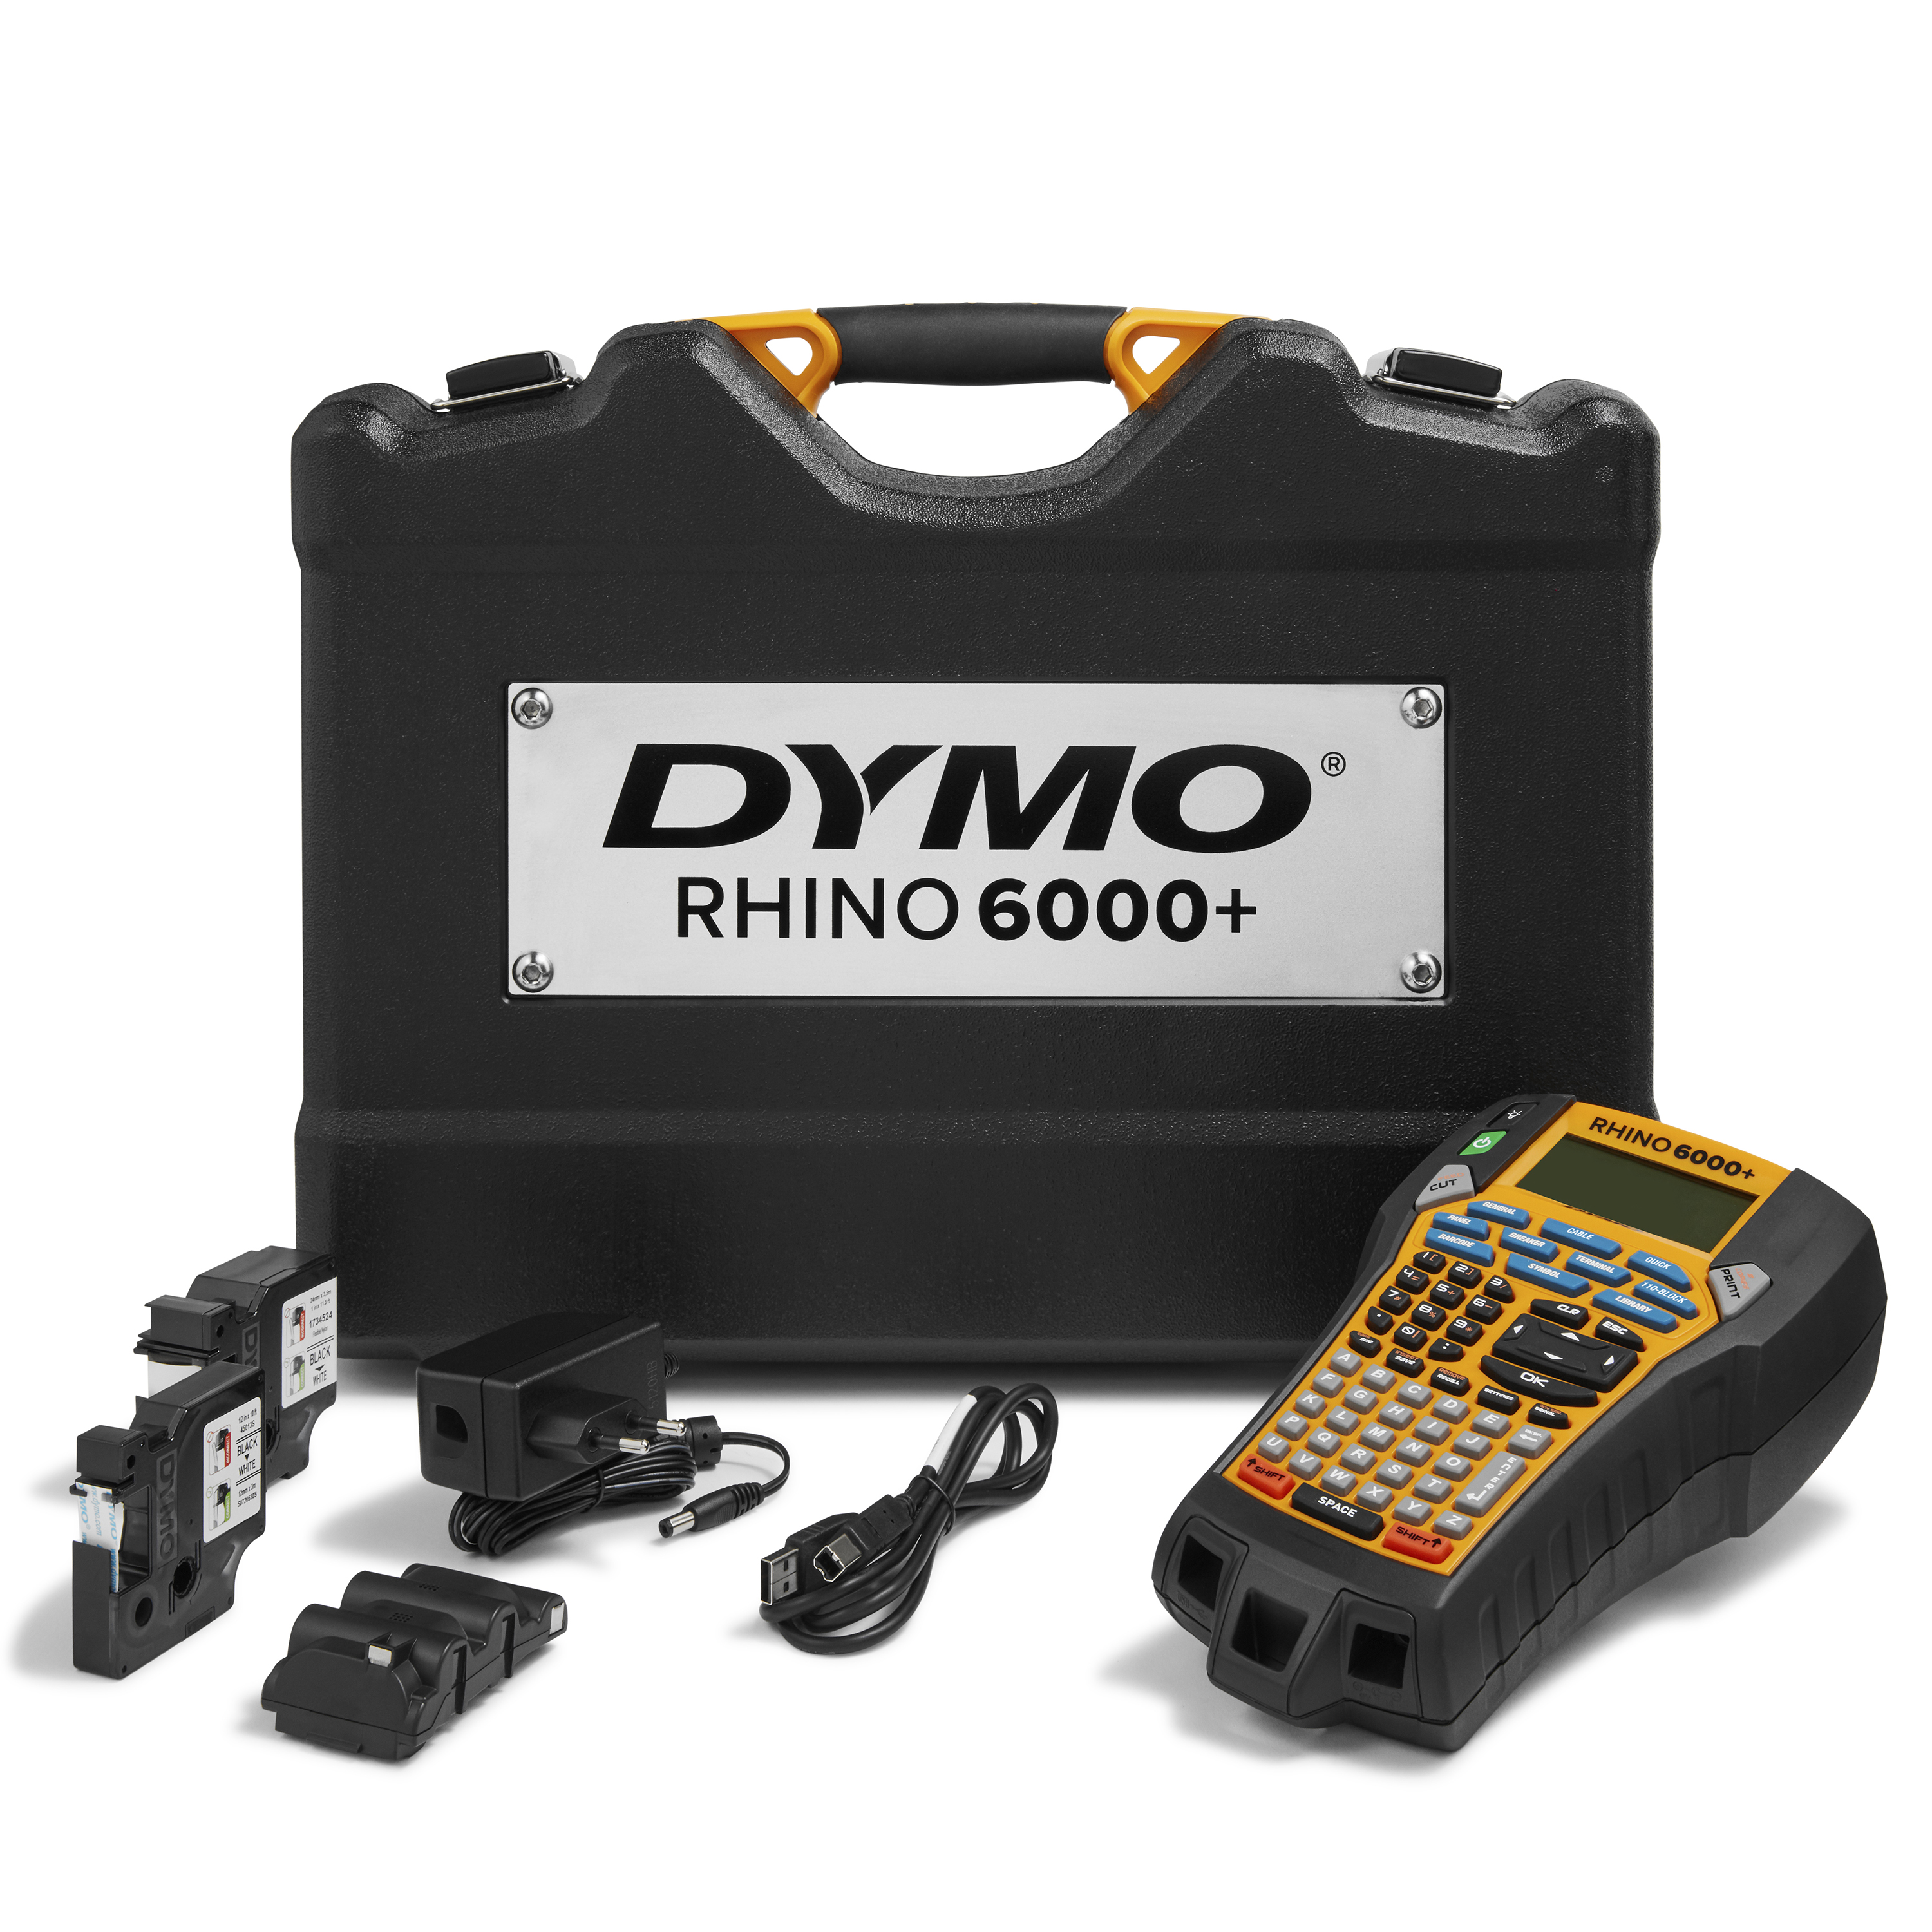 DYMO | Rhino 6000+ Industrielles Beschriftungsgerät | USB - Anschluss | ABC-Tastatur | im KofferSet